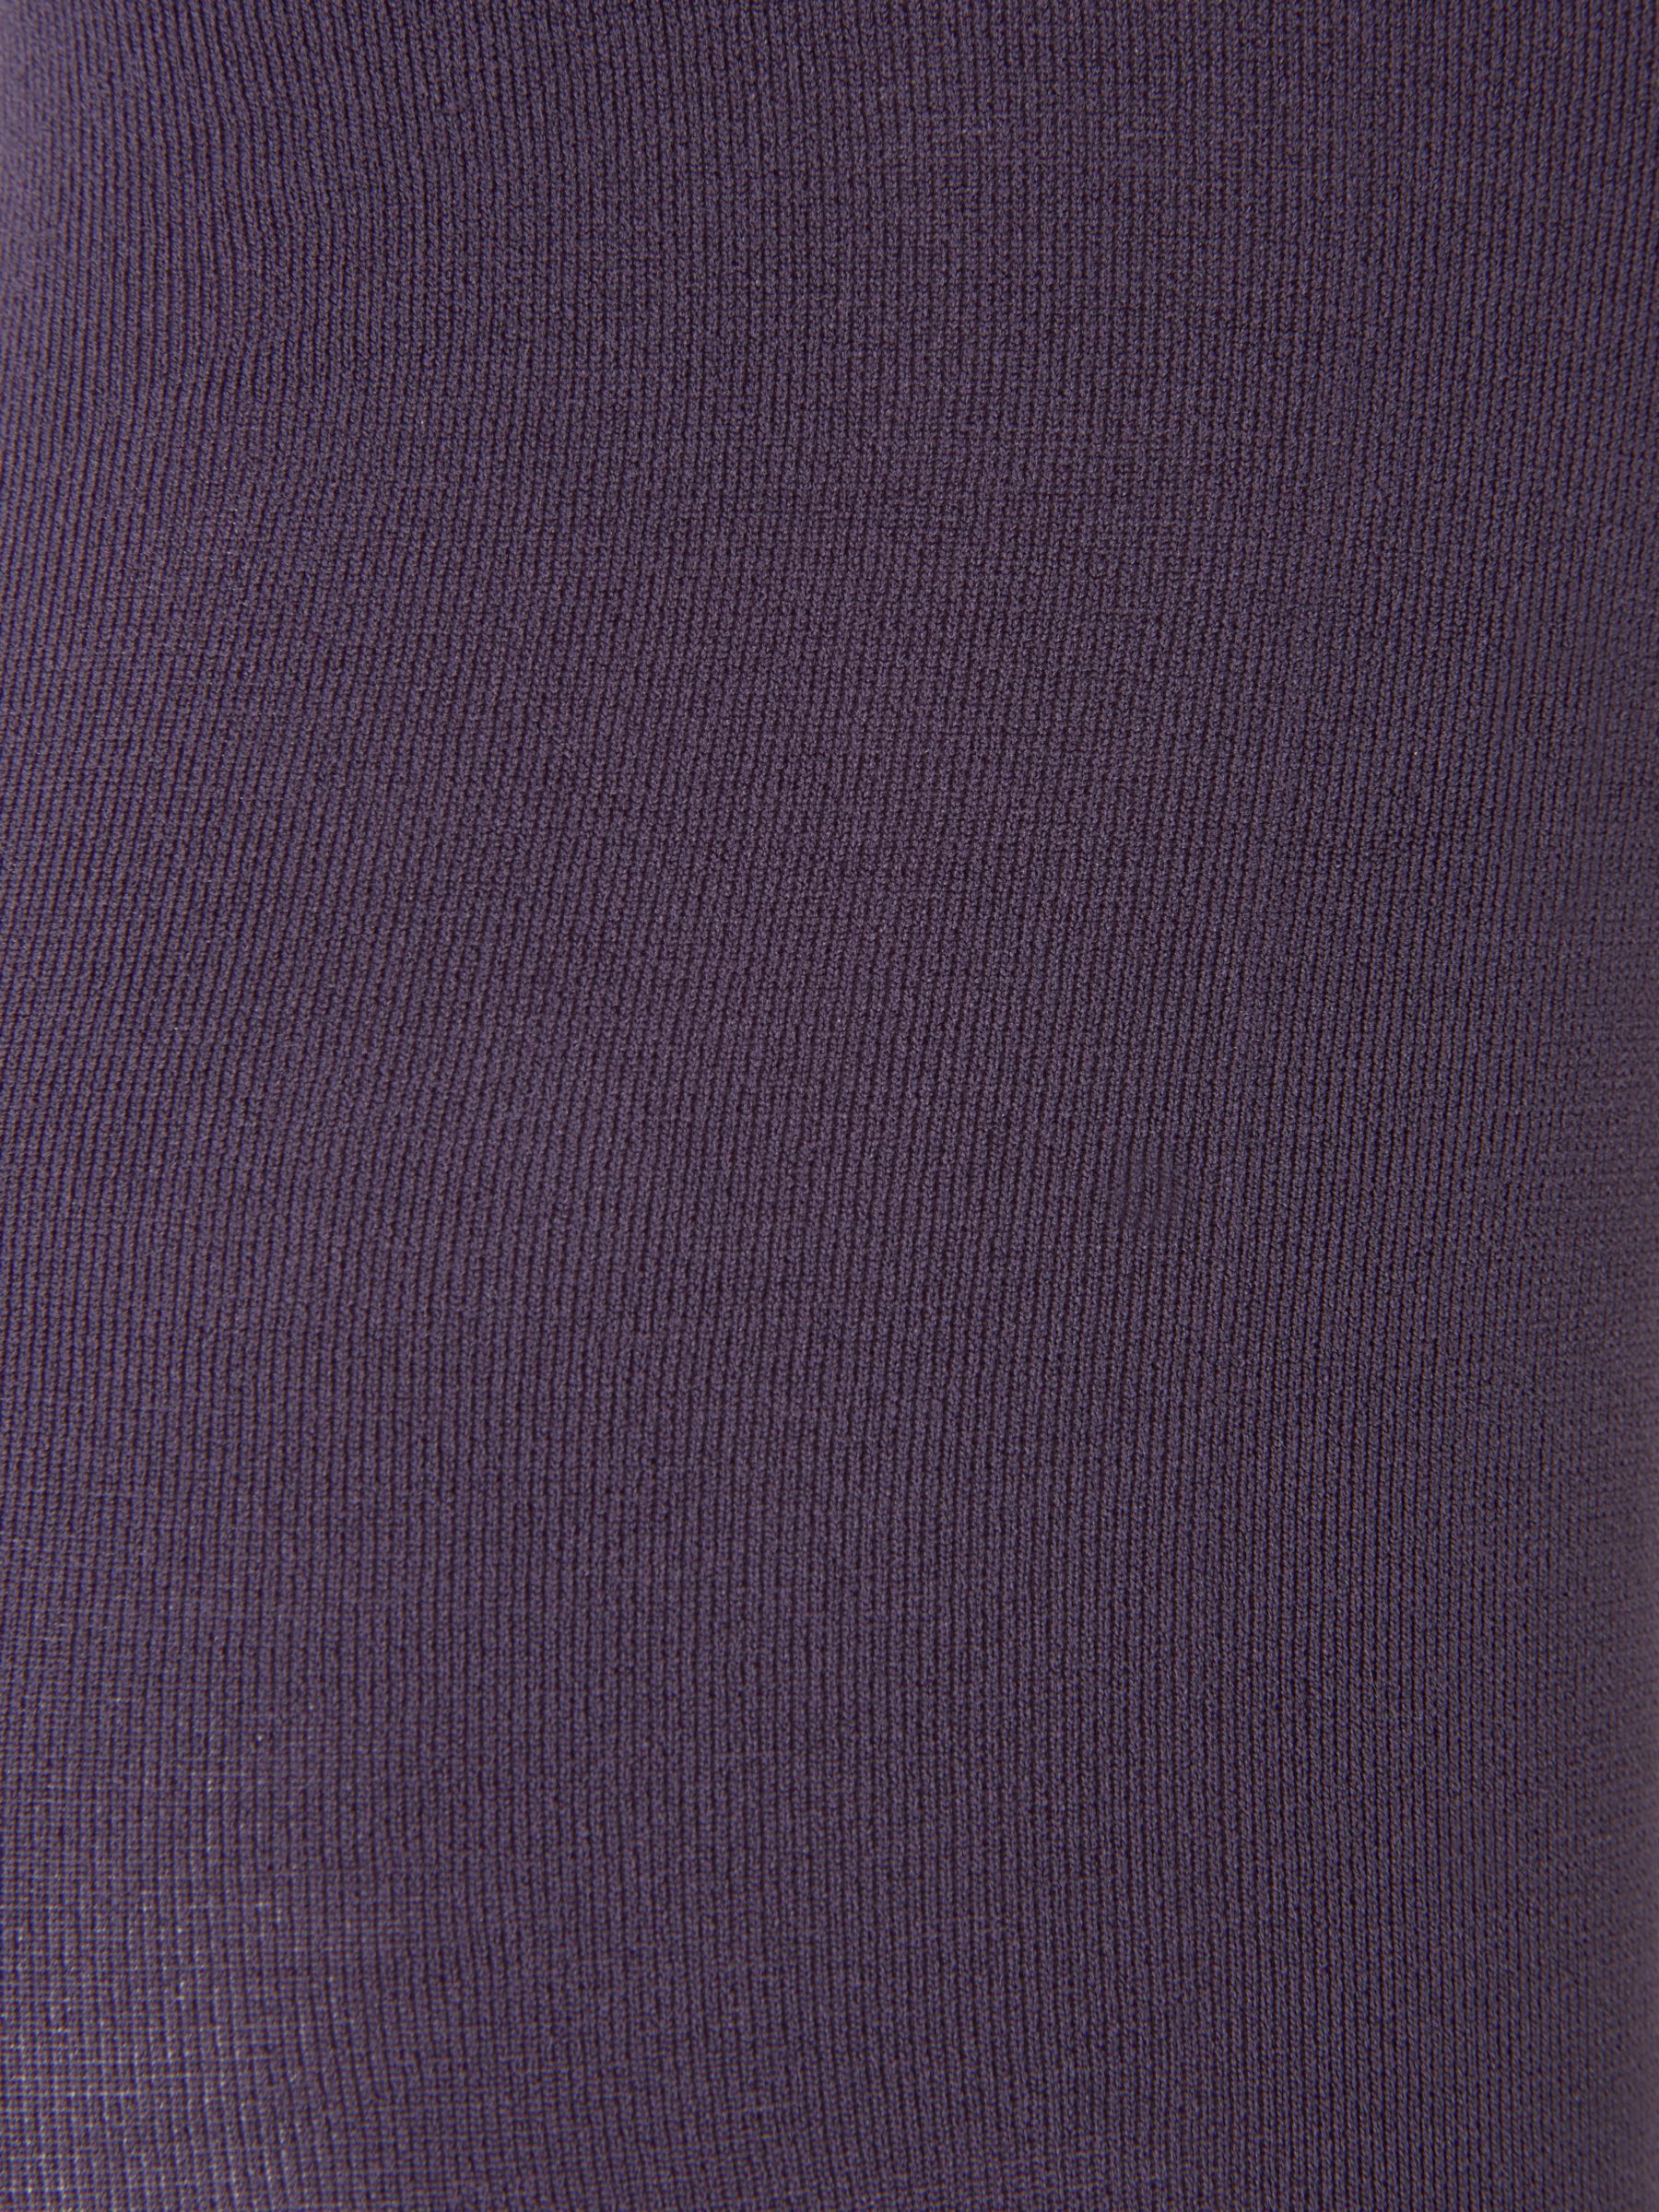 John Lewis 60 Denier Velvet Touch Tights, Purple, S